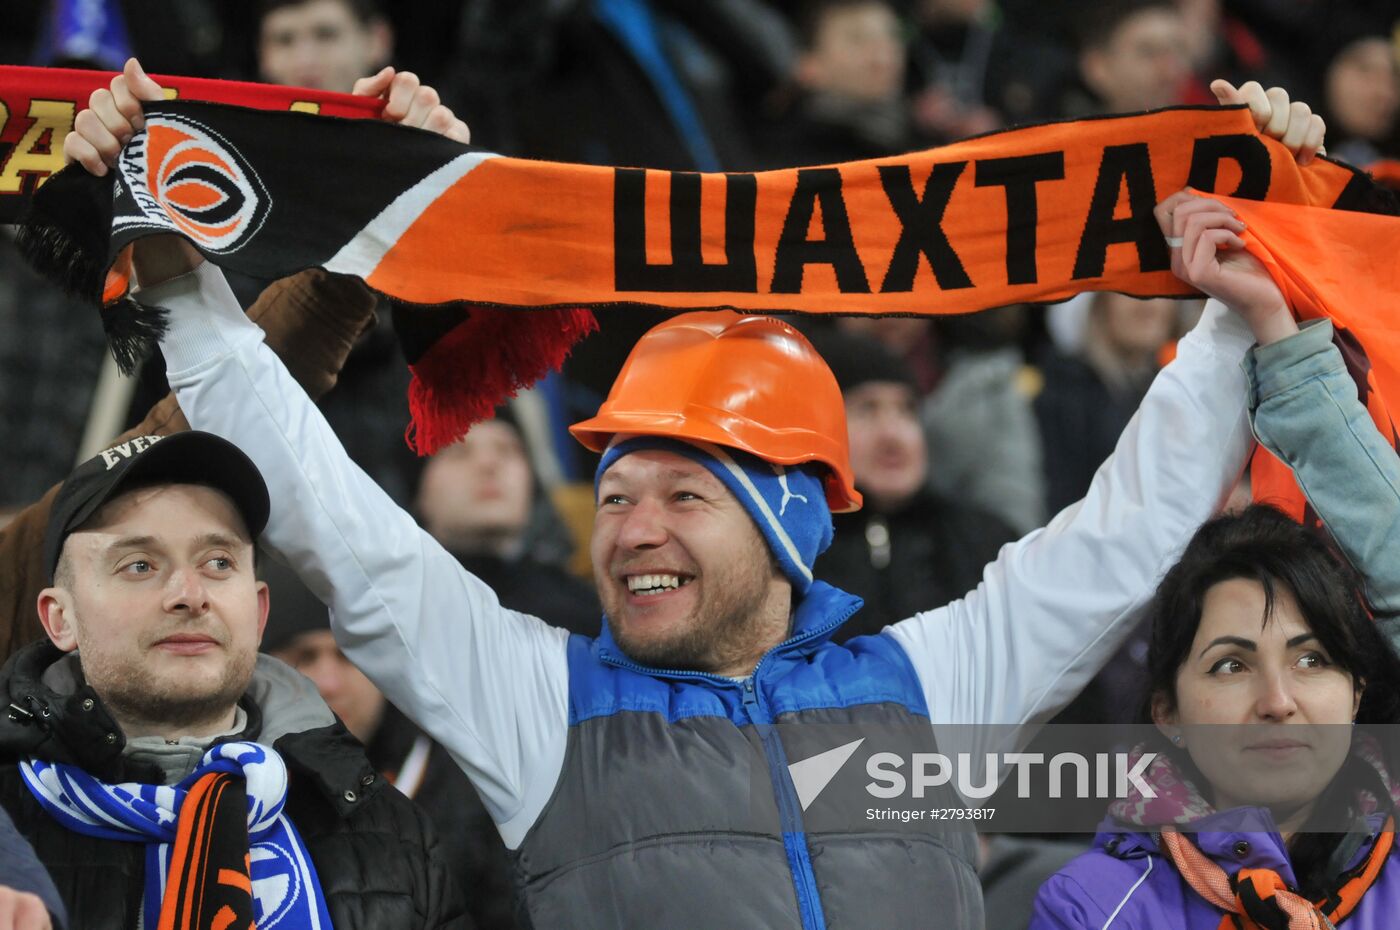 UEFA Europa League. Shakhtar vs. Schalke 04